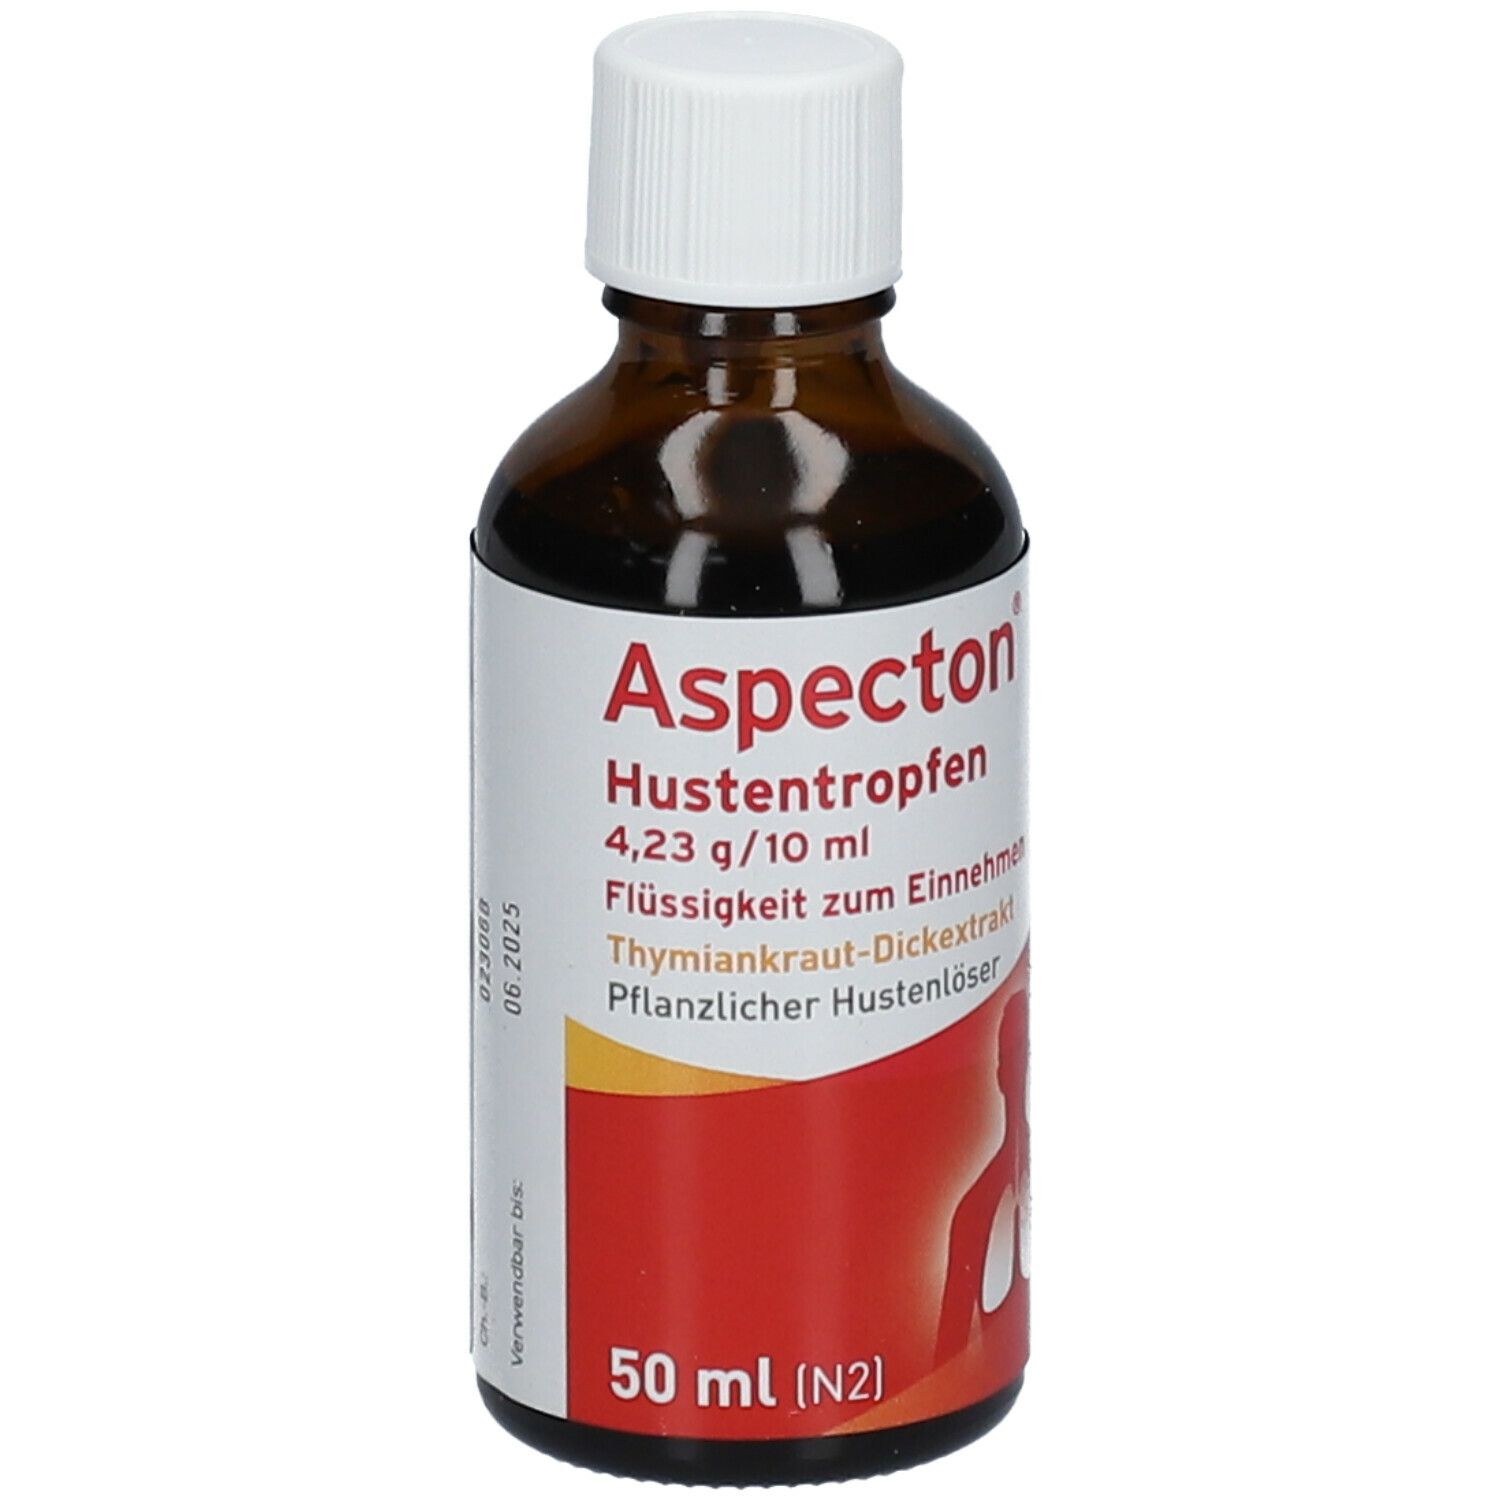 Aspecton® Hustentropfen